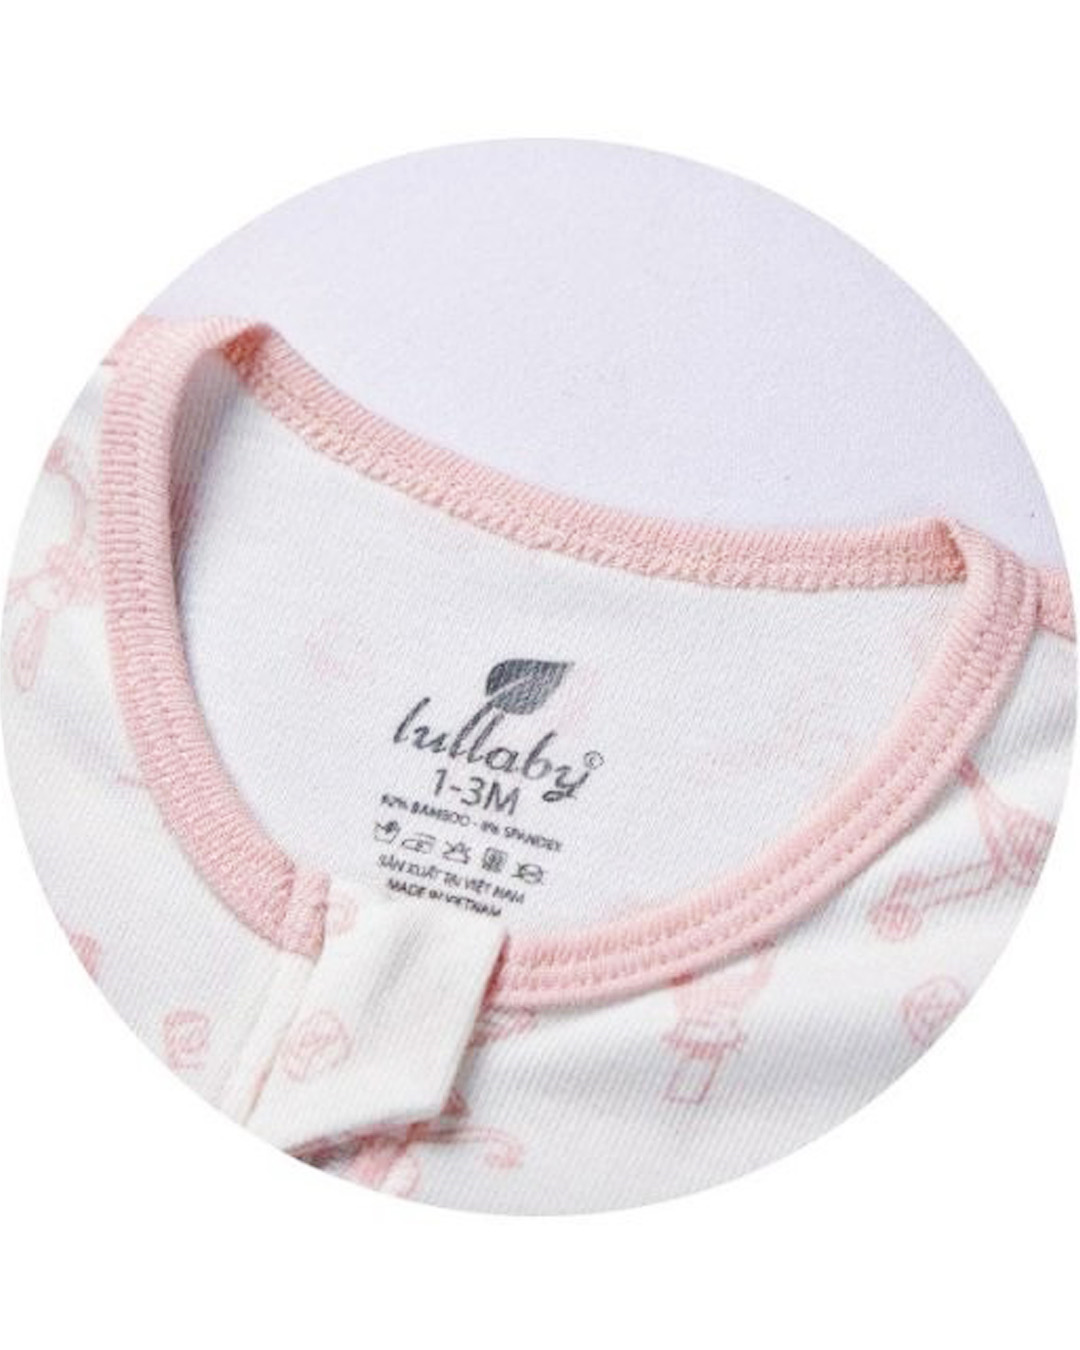 Nhộng chũn có khóa Lullaby NH849R 1 - 3 tháng màu trắng - hồng